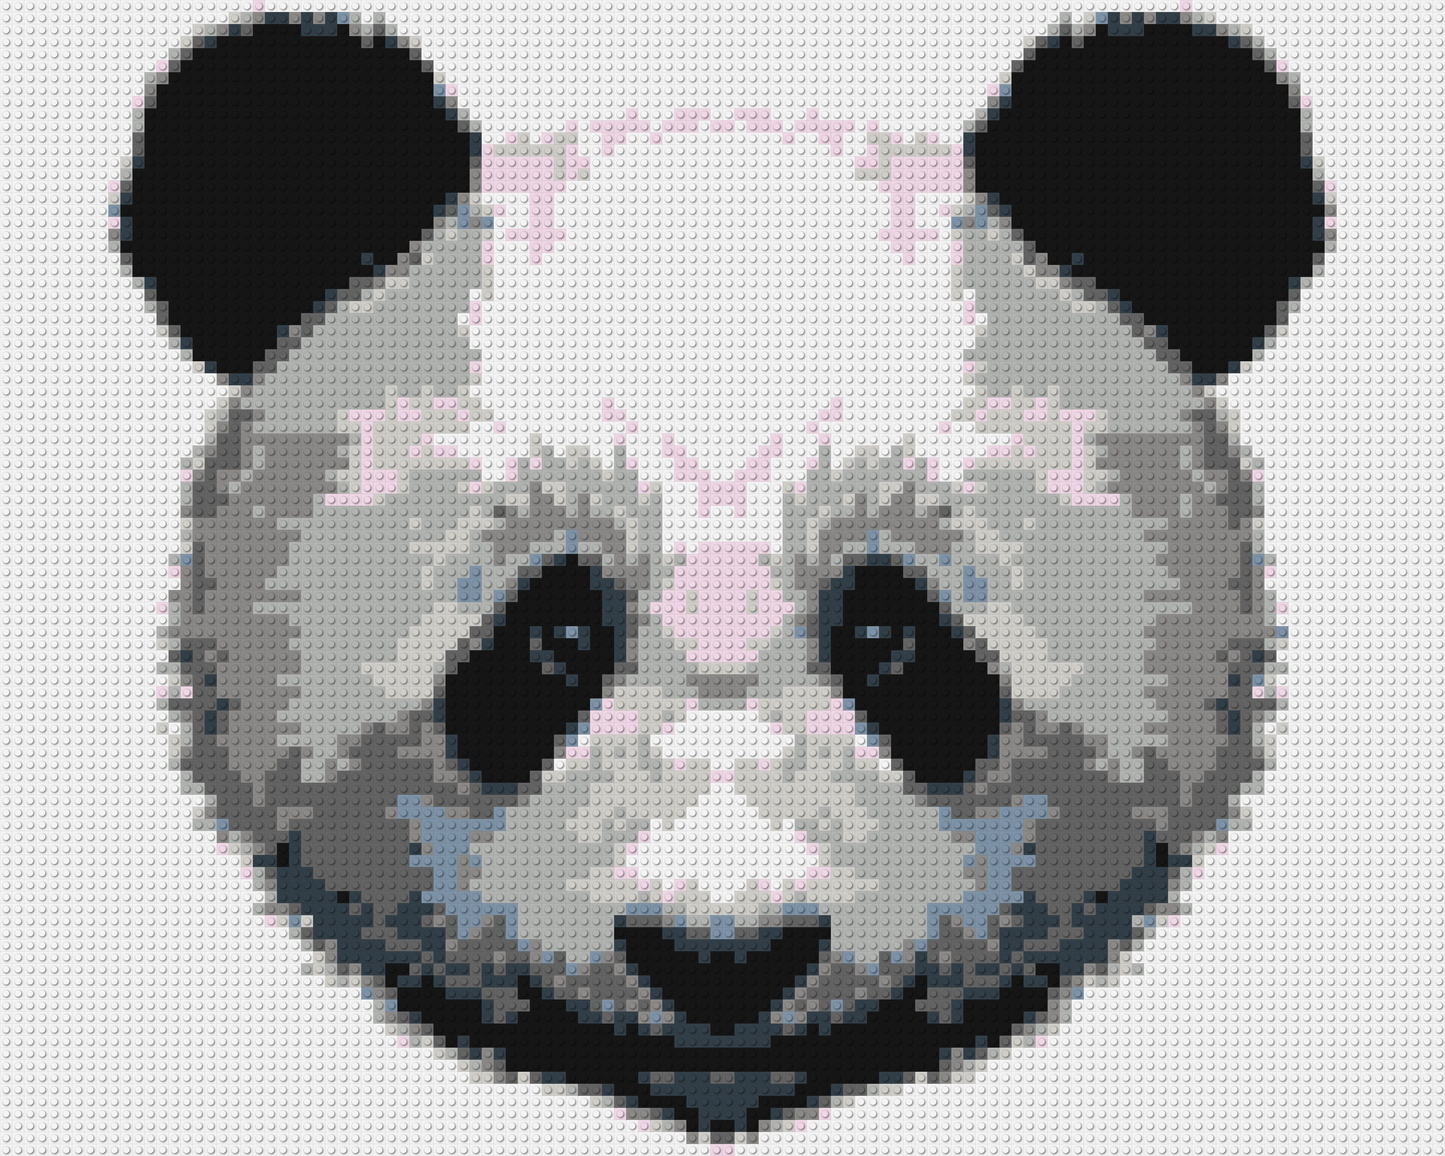 Panda - Brick Art Mosaic Kit